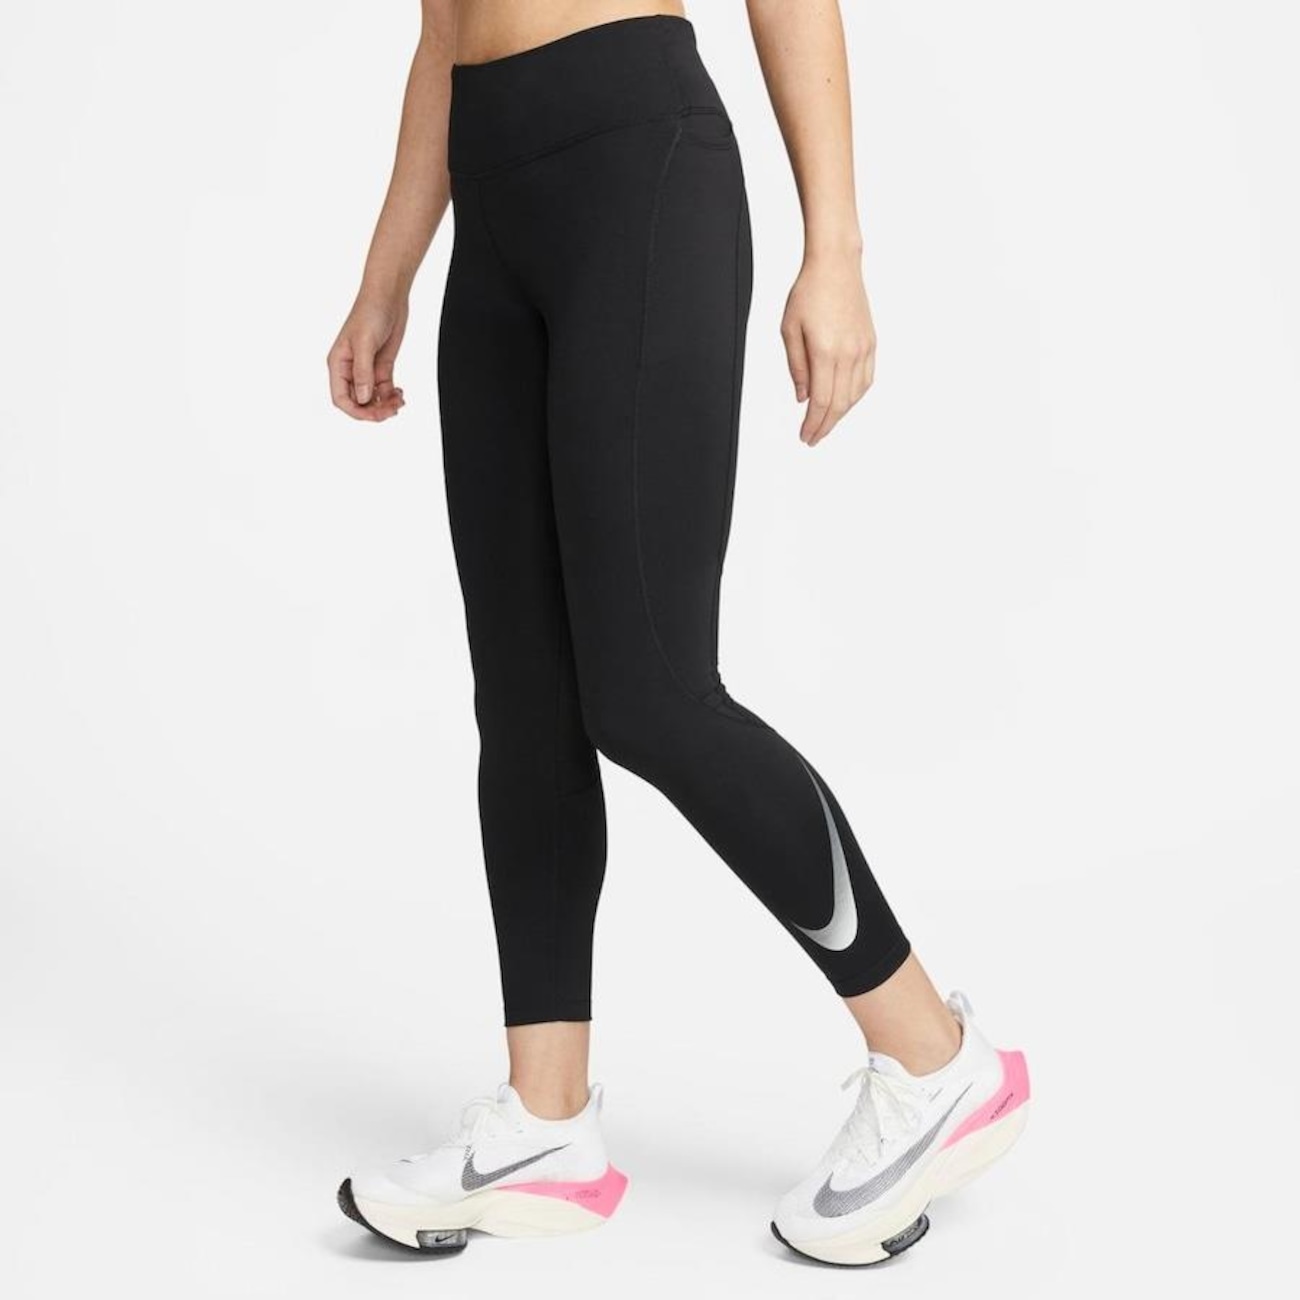 Preços baixos em Nike Leggings femininas